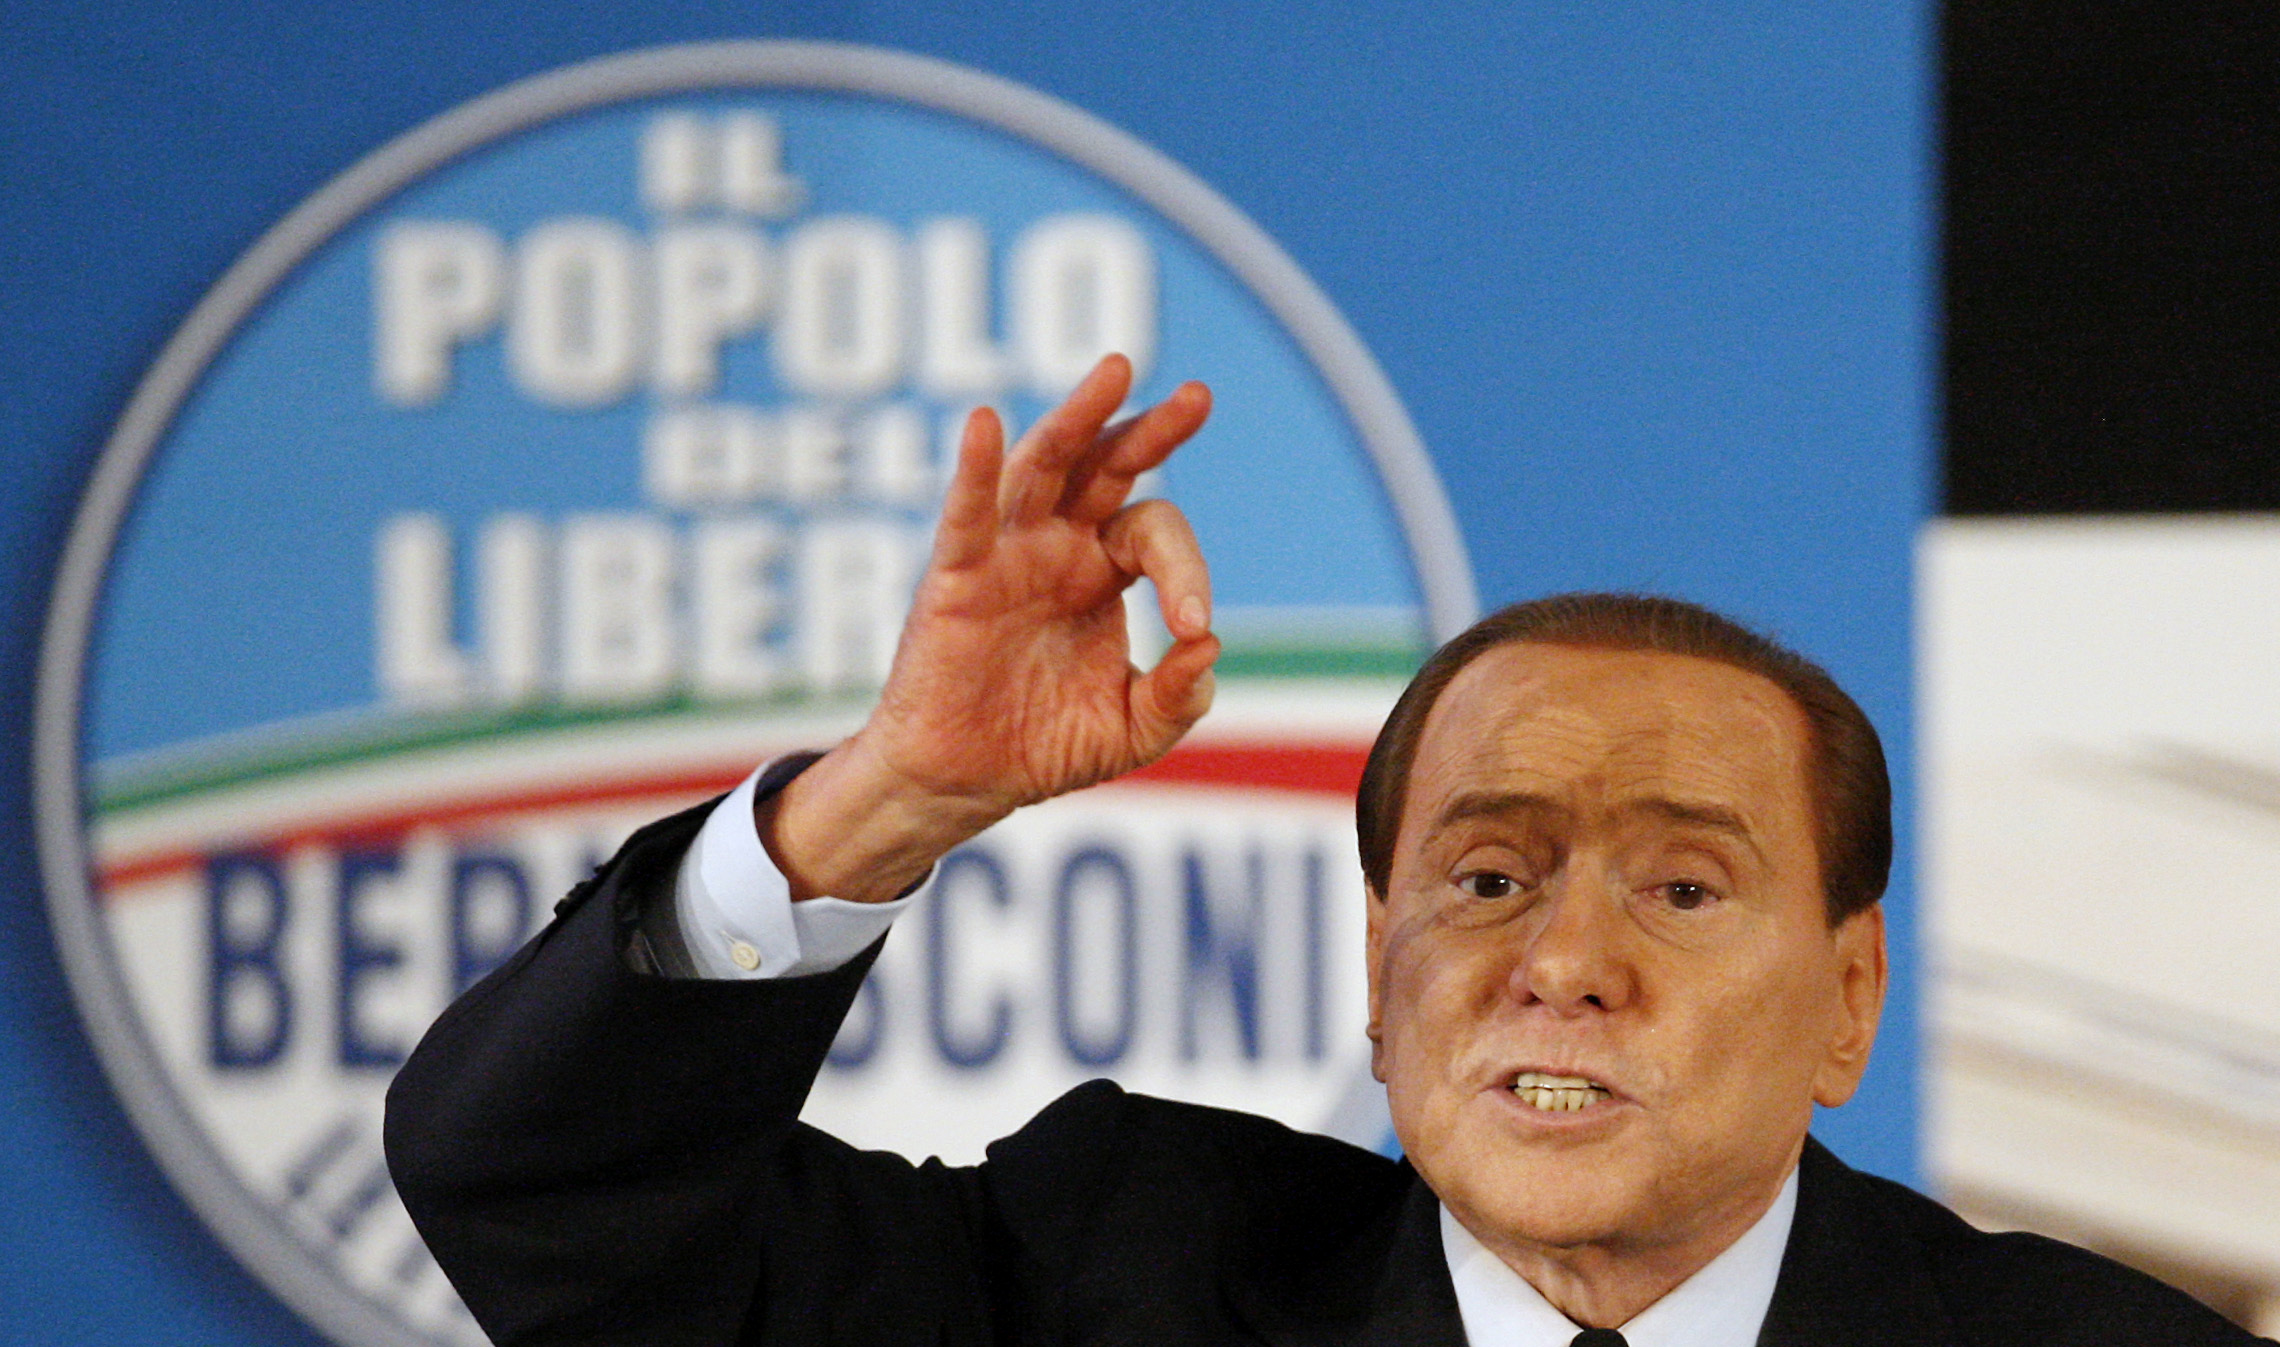 Skämt, Sex- och samlevnad, homofobi, Silvio Berlusconi, Berlusconi, Rom, Skandal, Italien